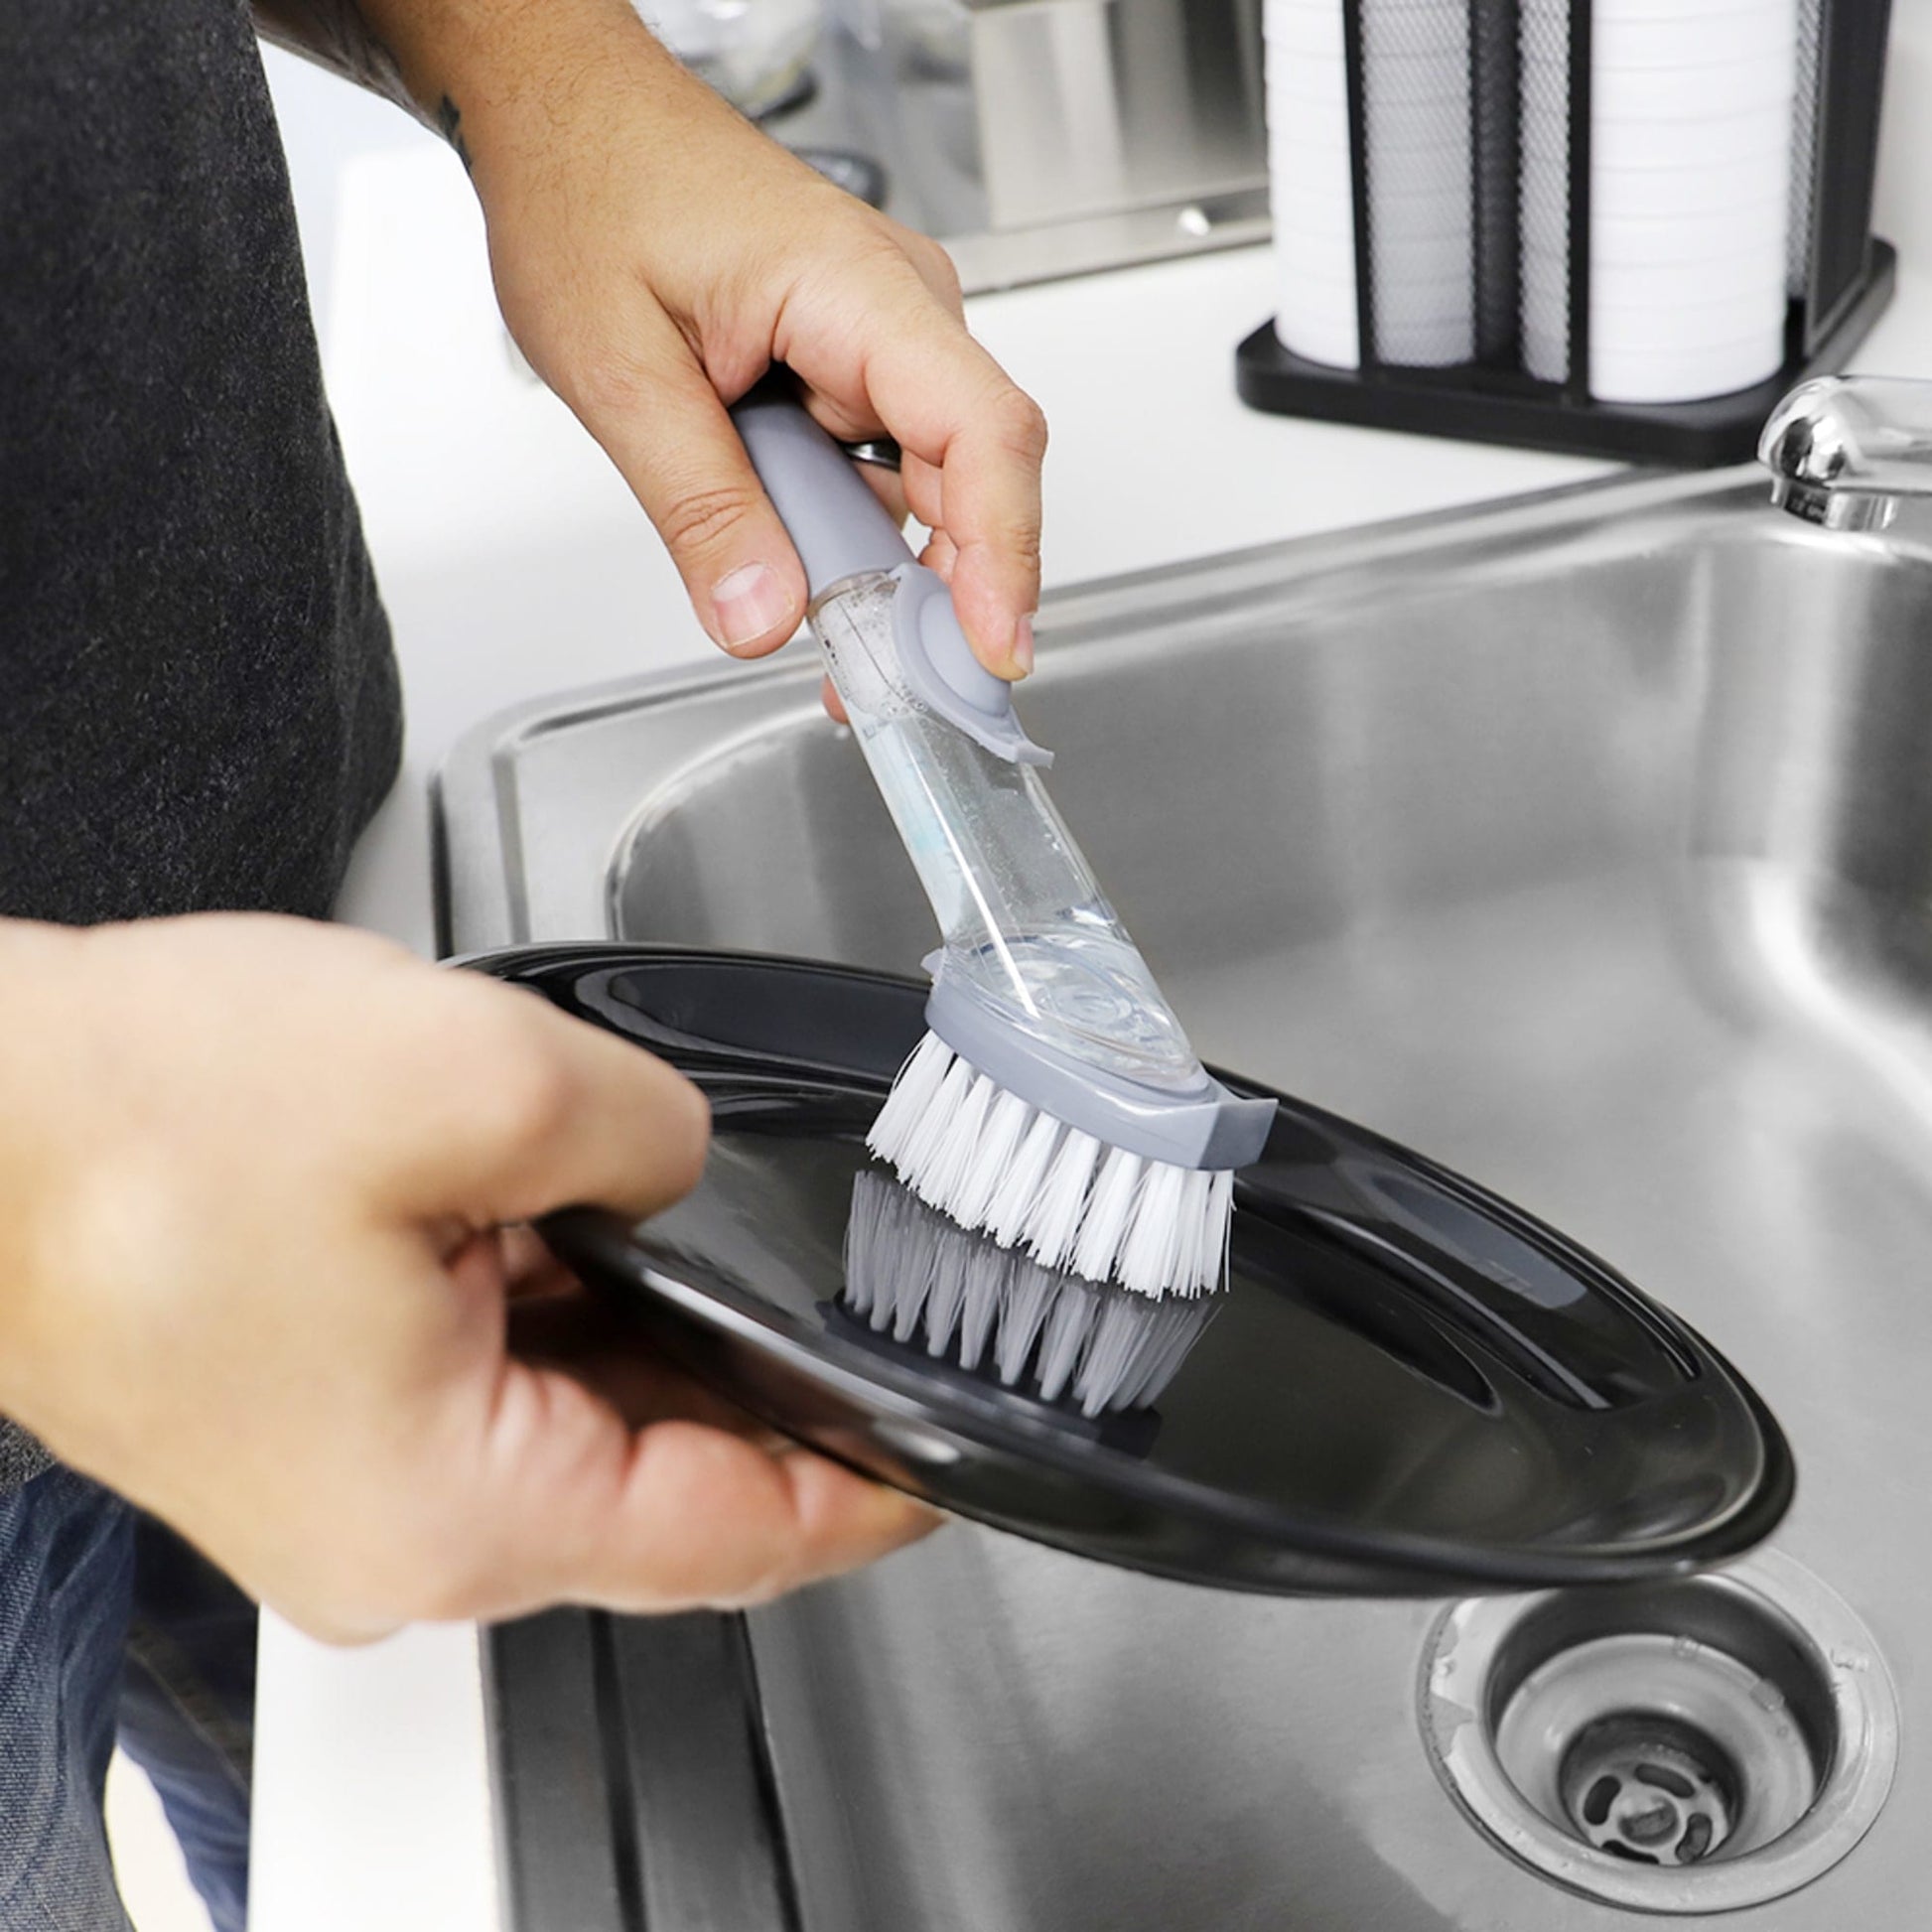 soap dispensing dish brush, washing brush